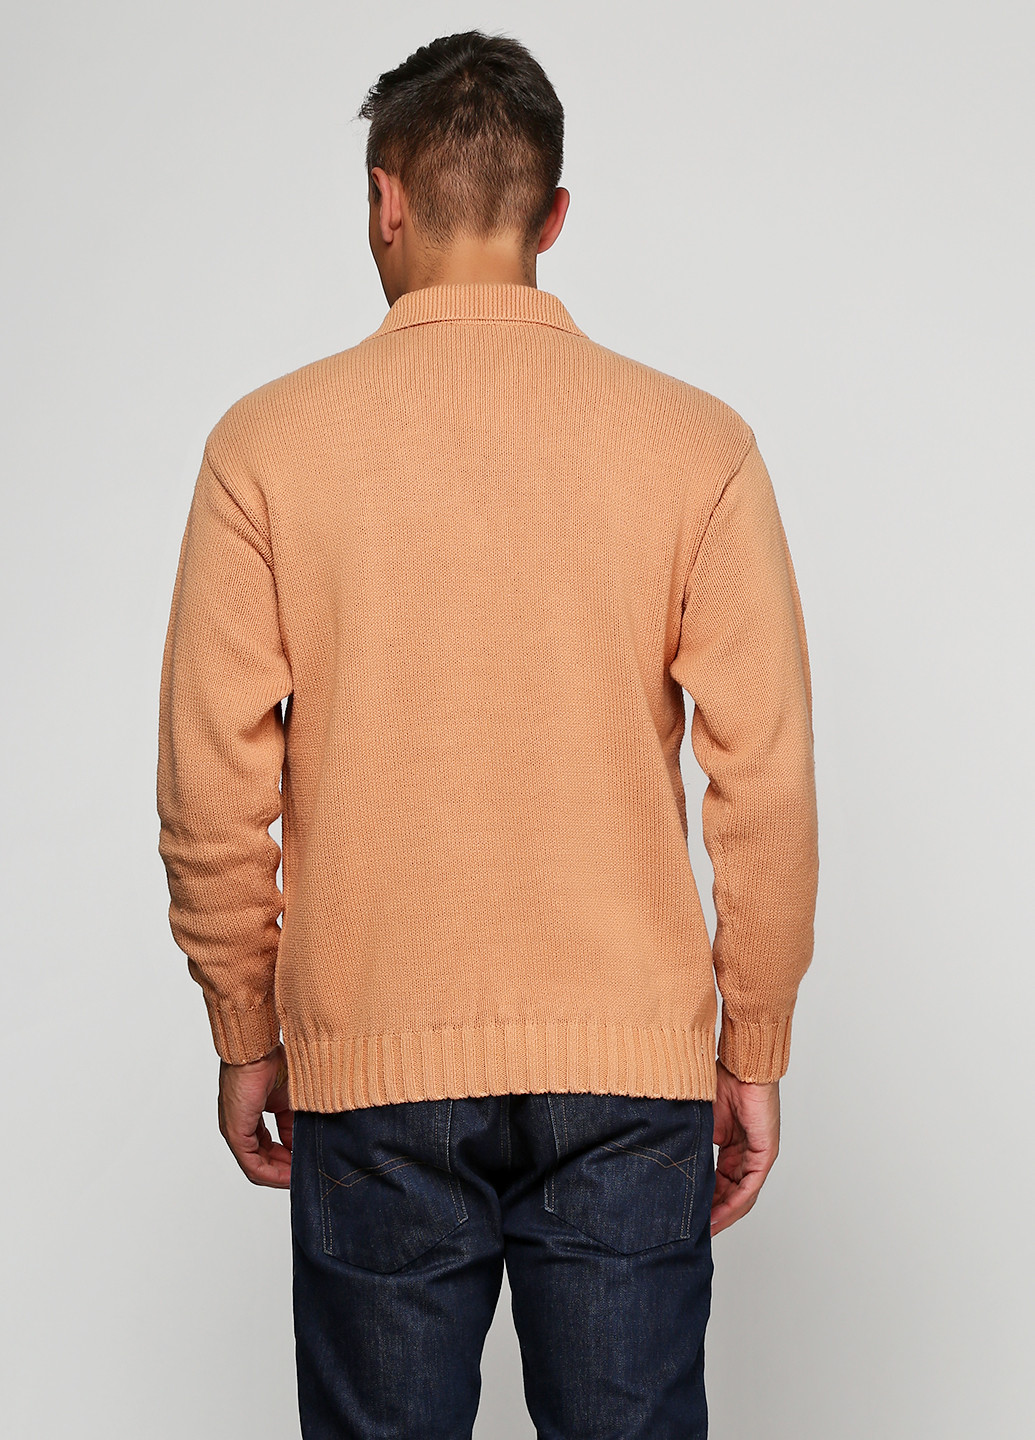 Песочный демисезонный пуловер пуловер Barbieri